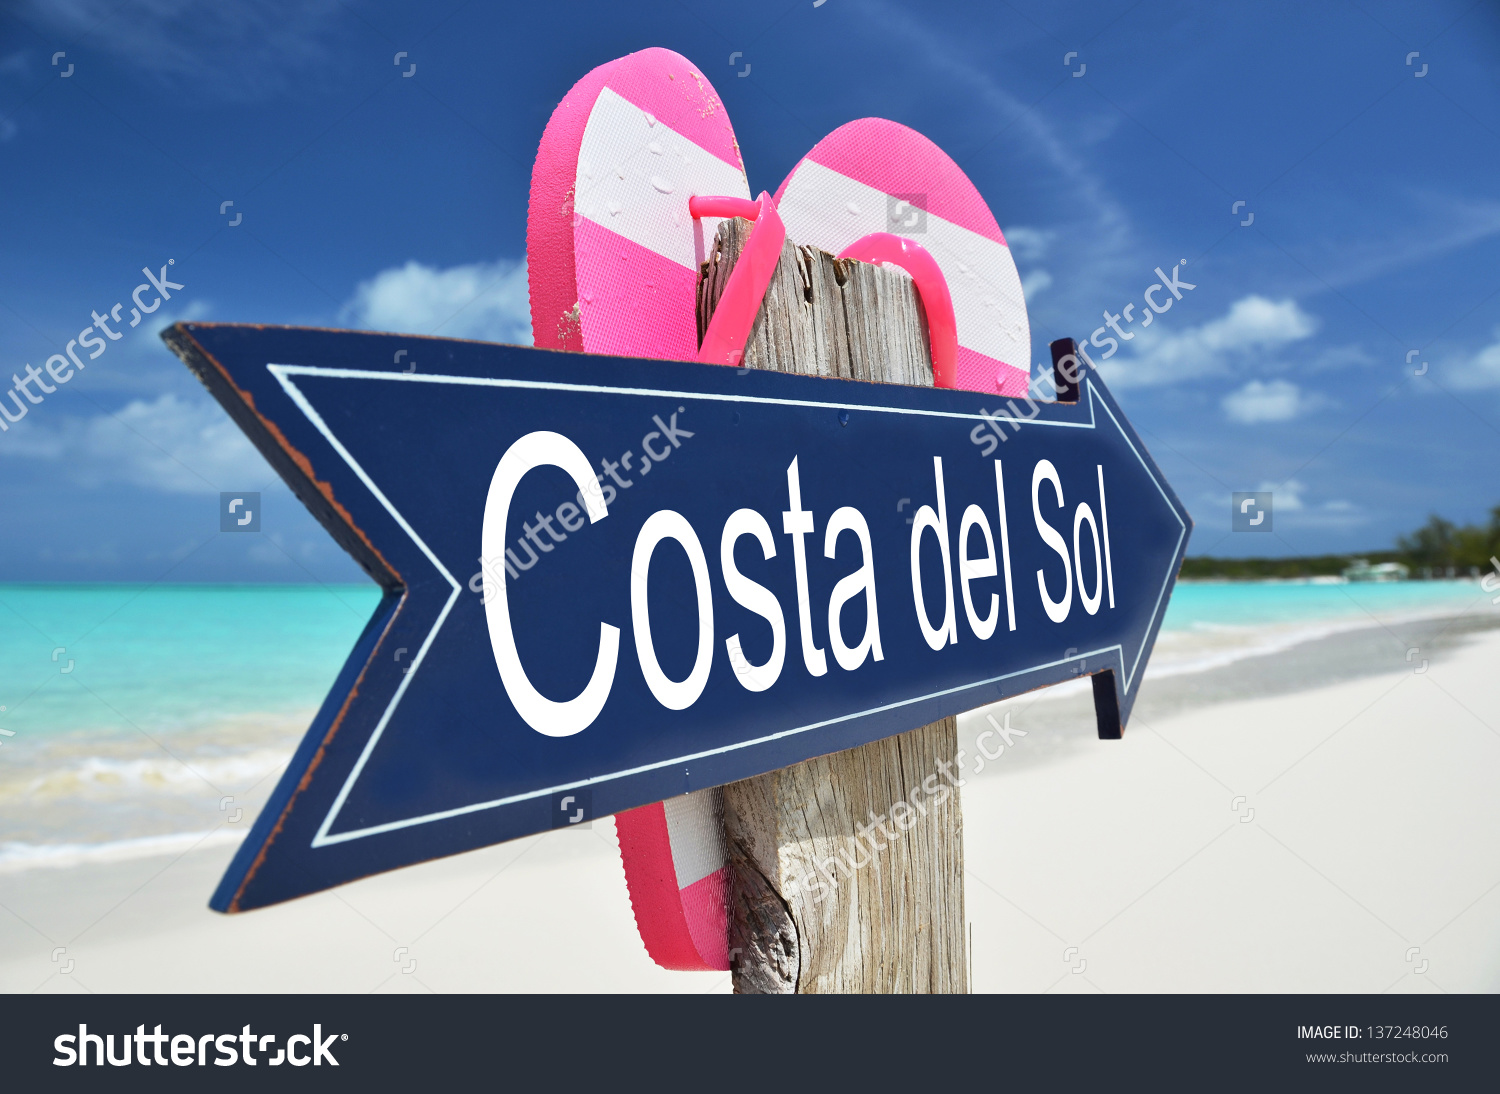 Costa Del Sol clipart #7, Download drawings